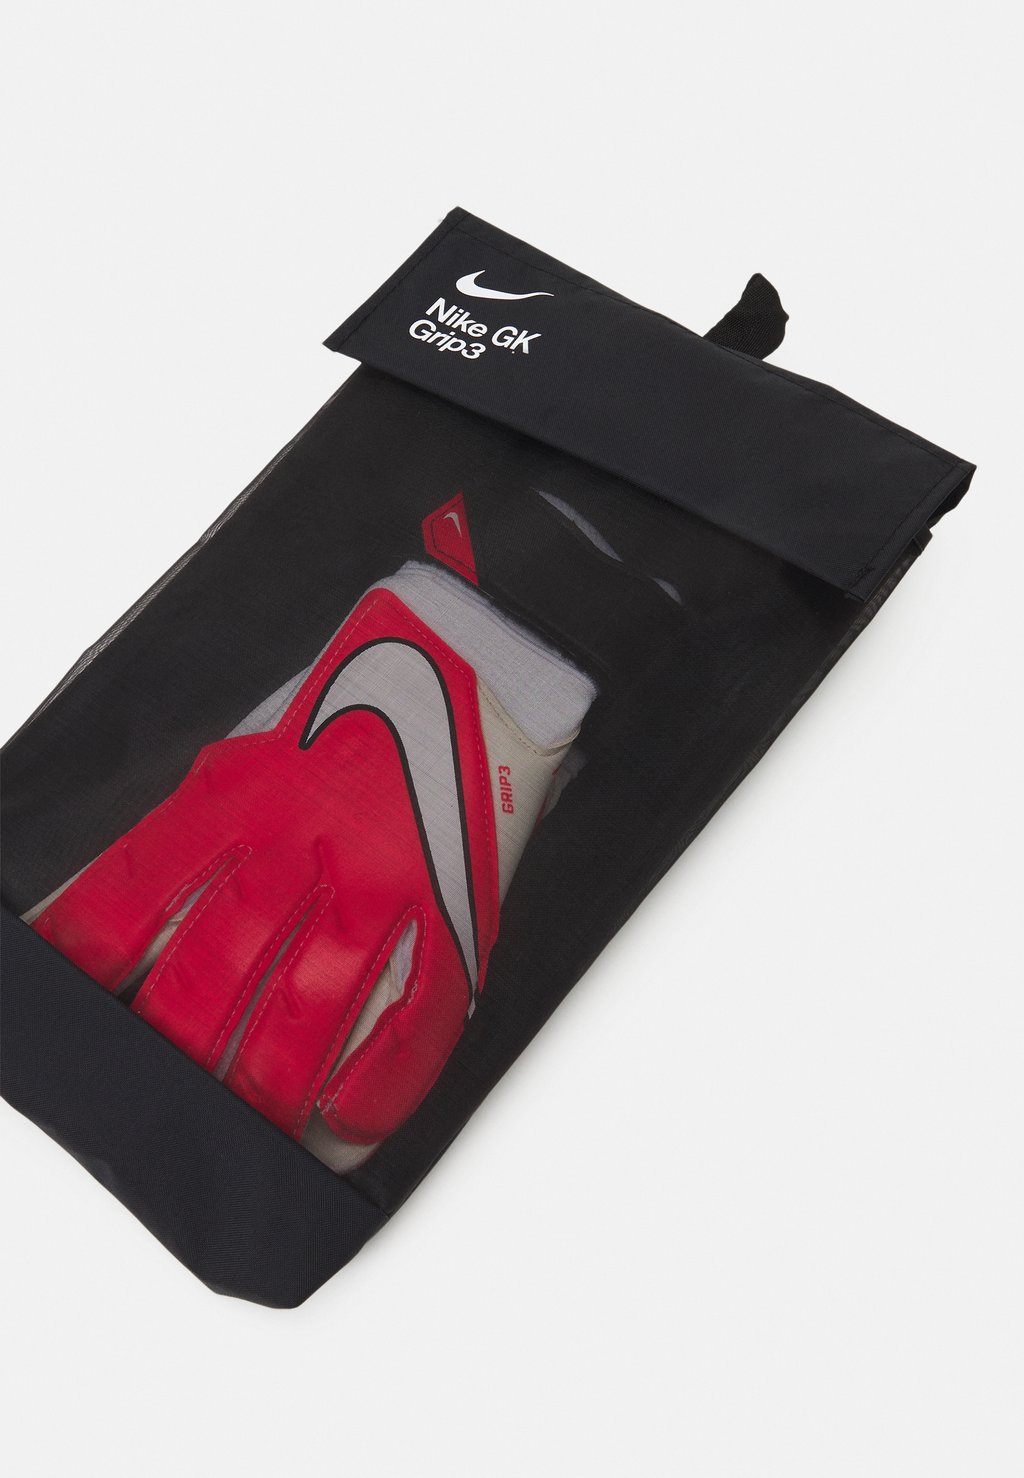 Перчатки вратарские Nk Gk Grp3-Fa20 Nike, цвет bright crimson/black/white мяч футбольный nike fcb nk strk fa20 красный